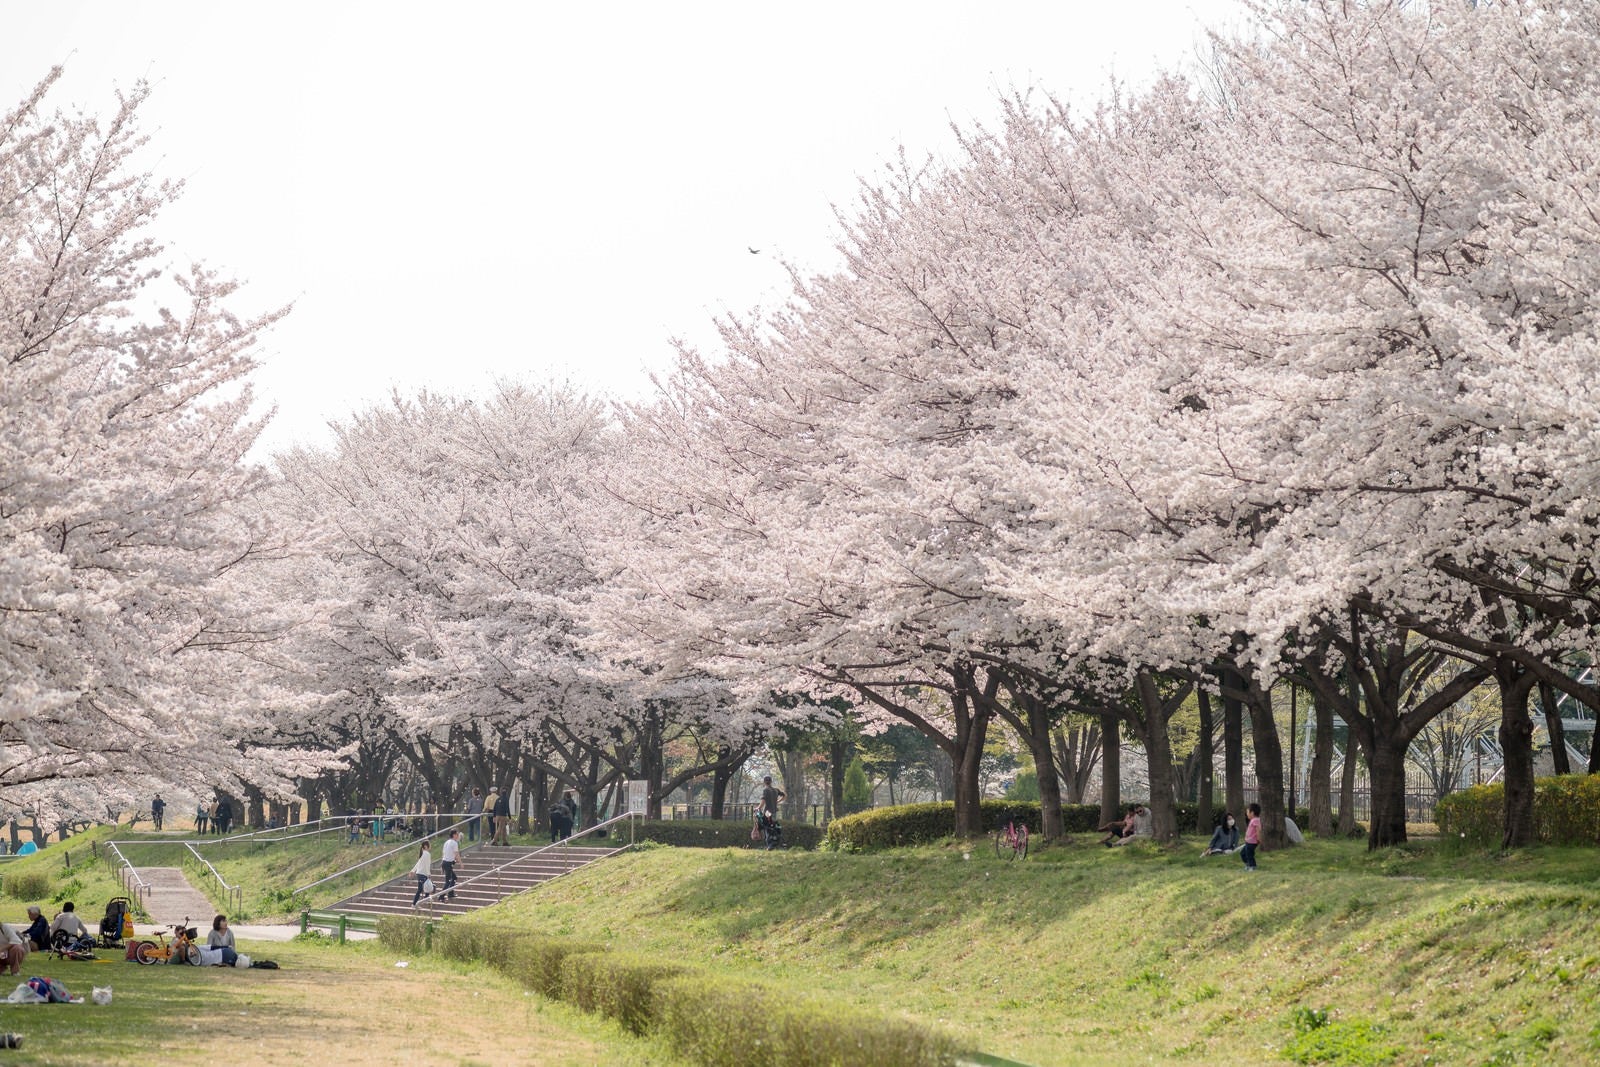 「満開の桜並木と花見人」の写真